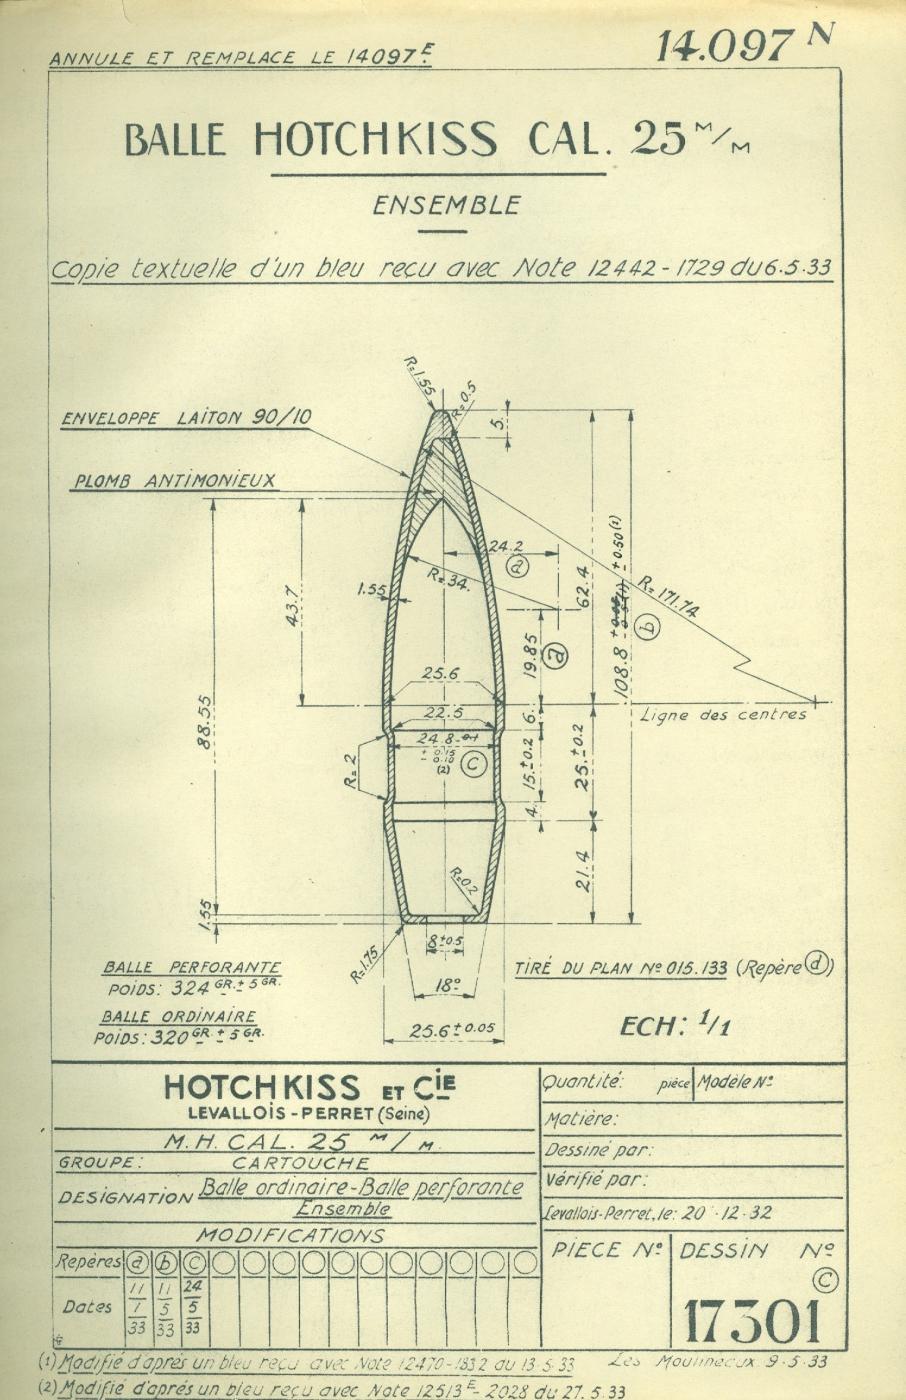 Balle Hotchkiss de 25 mm – Tracé N° 14097N